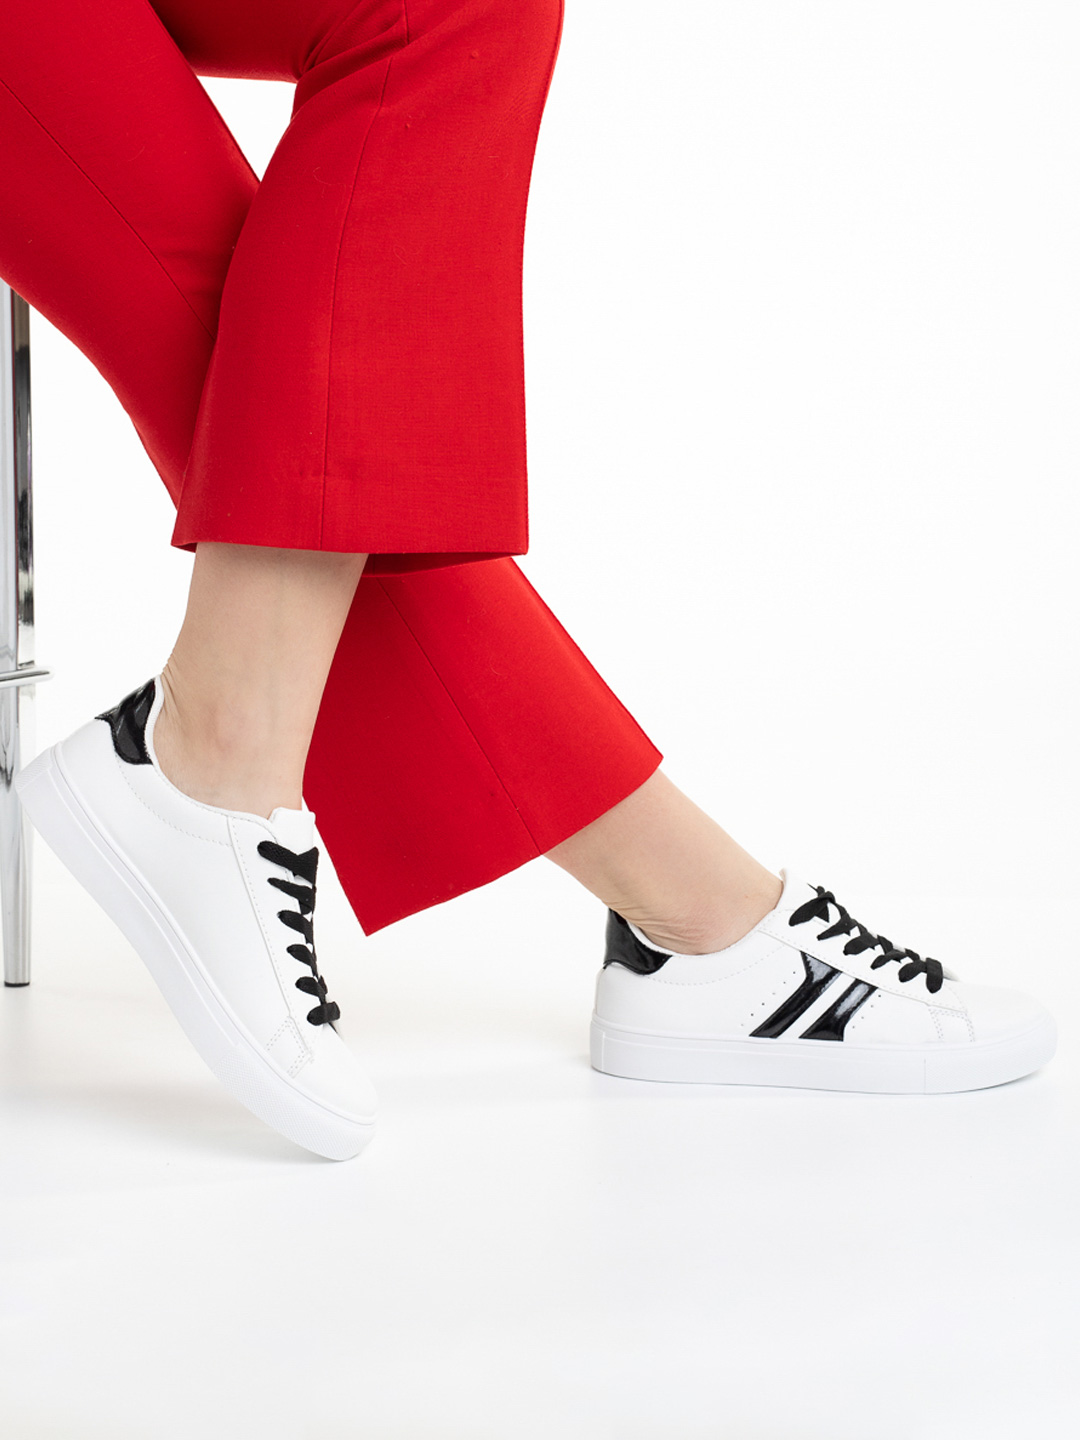 Pantofi sport dama albi cu negru din piele ecologica Sanaz